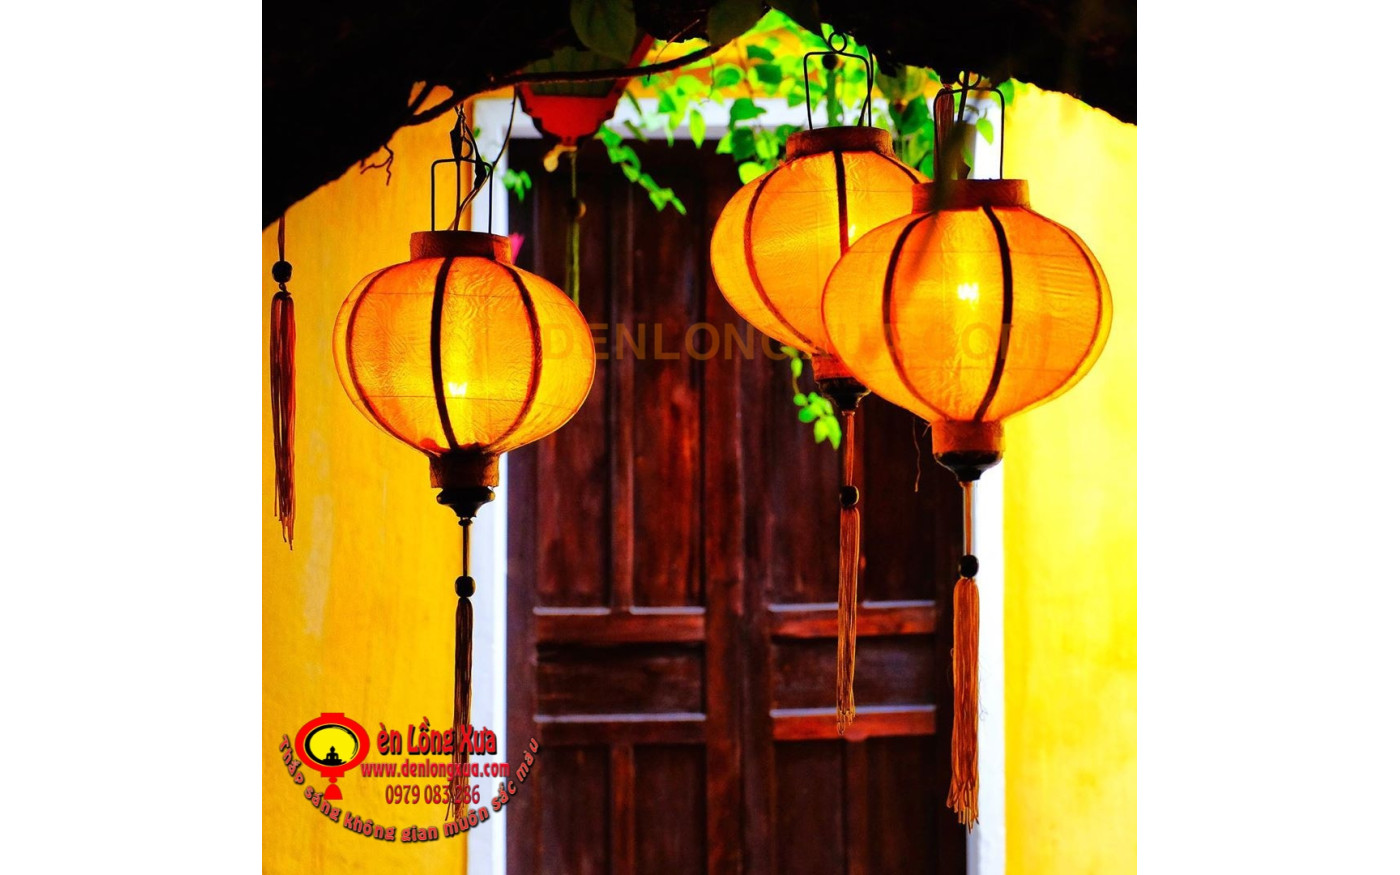 Đèn lồng Hội An là biểu tượng văn hóa độc đáo của Việt Nam và trở thành điểm đến không thể bỏ qua khi đến Hội An. Năm 2024, đèn lồng Hội An sẽ được thêm nhiều màu sắc và thiết kế mới, tạo ra những bức ảnh đẹp lung linh. Hãy đến Hội An vào mùa đông để trải nghiệm vẻ đẹp đầy màu sắc của đèn lồng và tìm hiểu về lịch sử và văn hóa độc đáo của thành phố cổ.